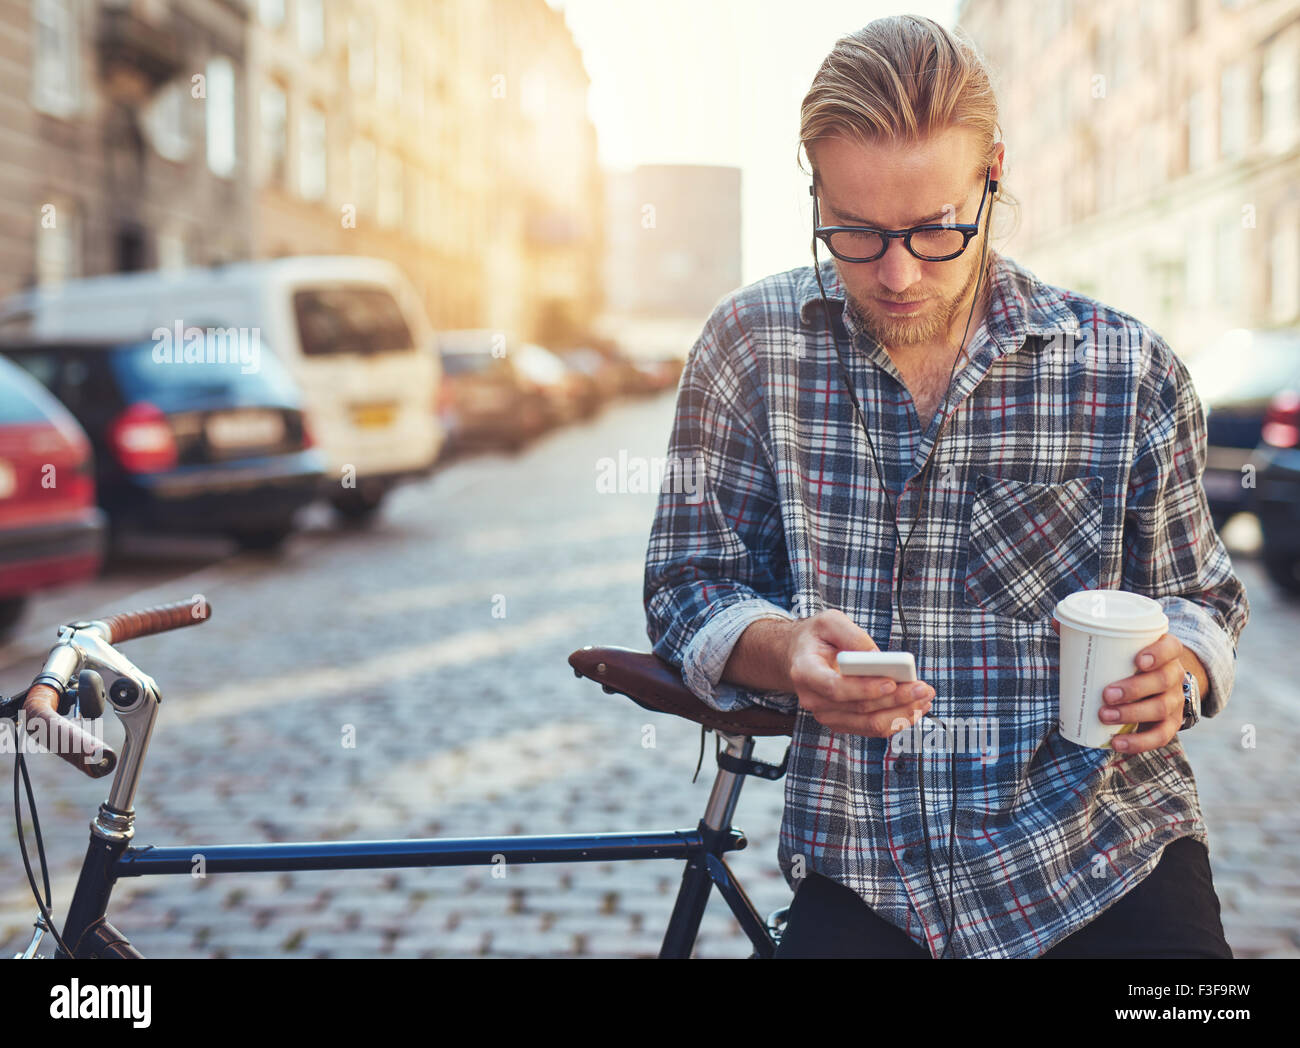 Outdoor ritratto della moderna giovane con telefono cellulare in strada, seduto sulla bici Foto Stock